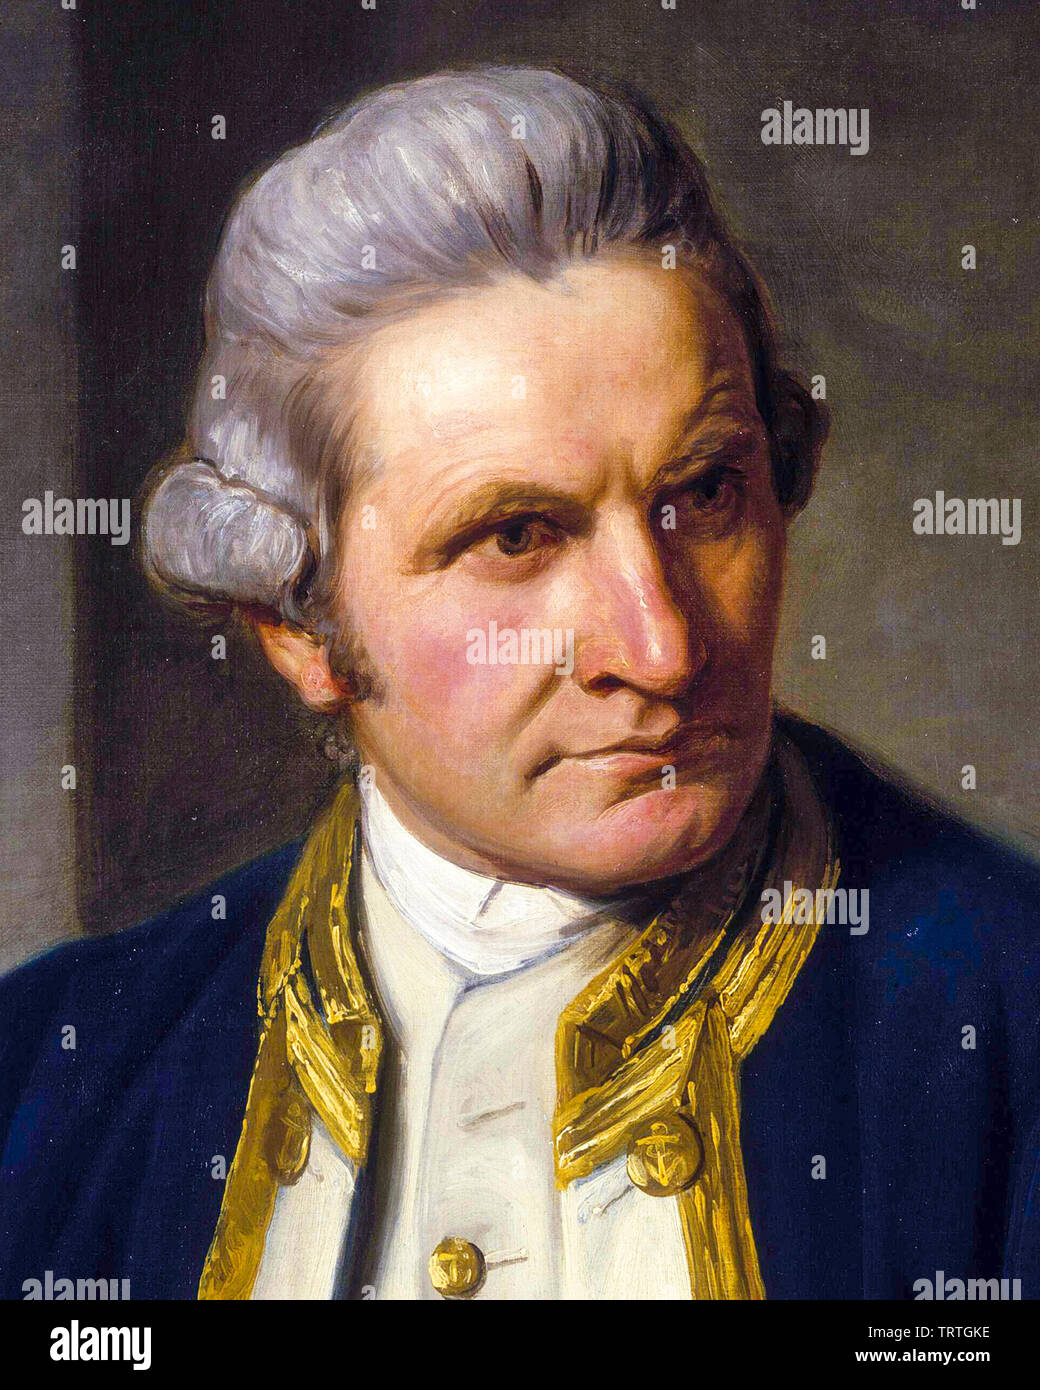 Captain James Cook, 1728-1779, portrait painting, 1776 Stock Photo